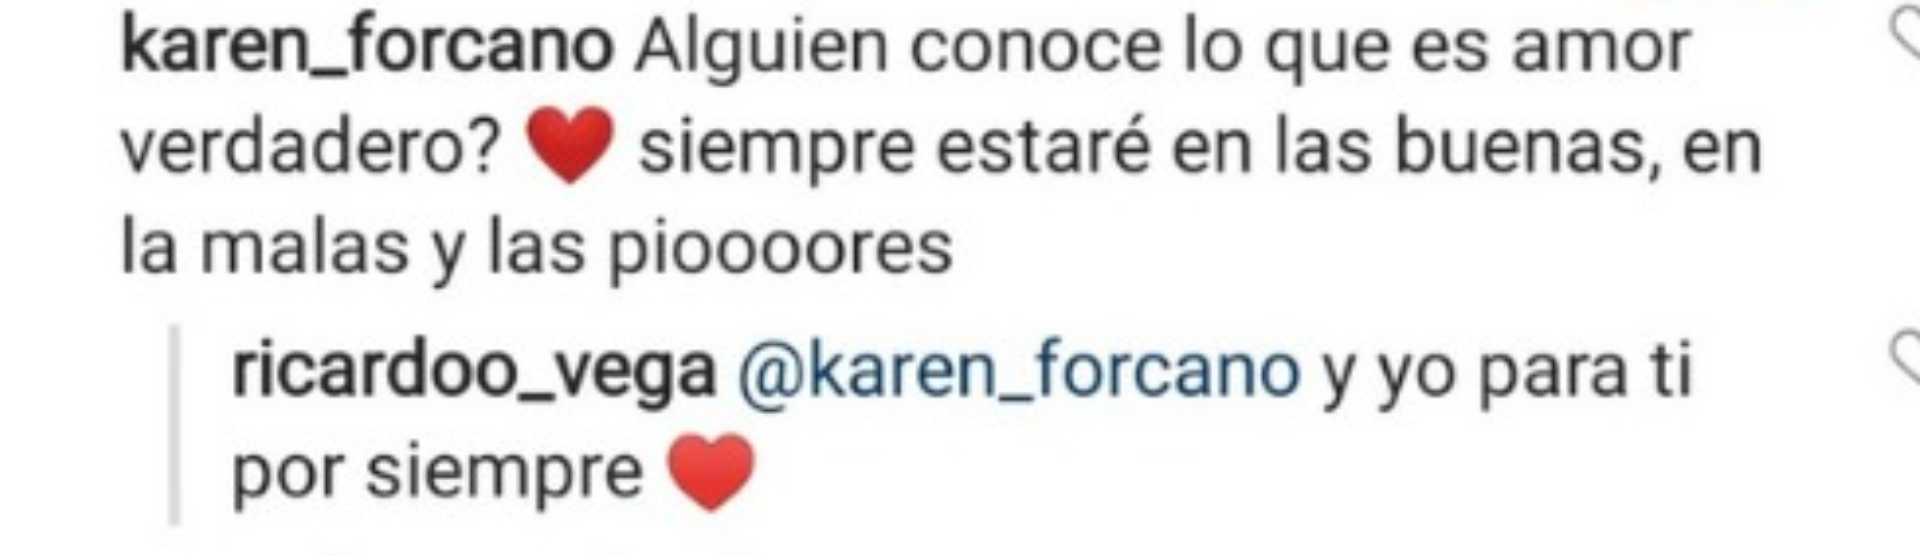 Comentario de Karen Forcano a Ricardo Vega